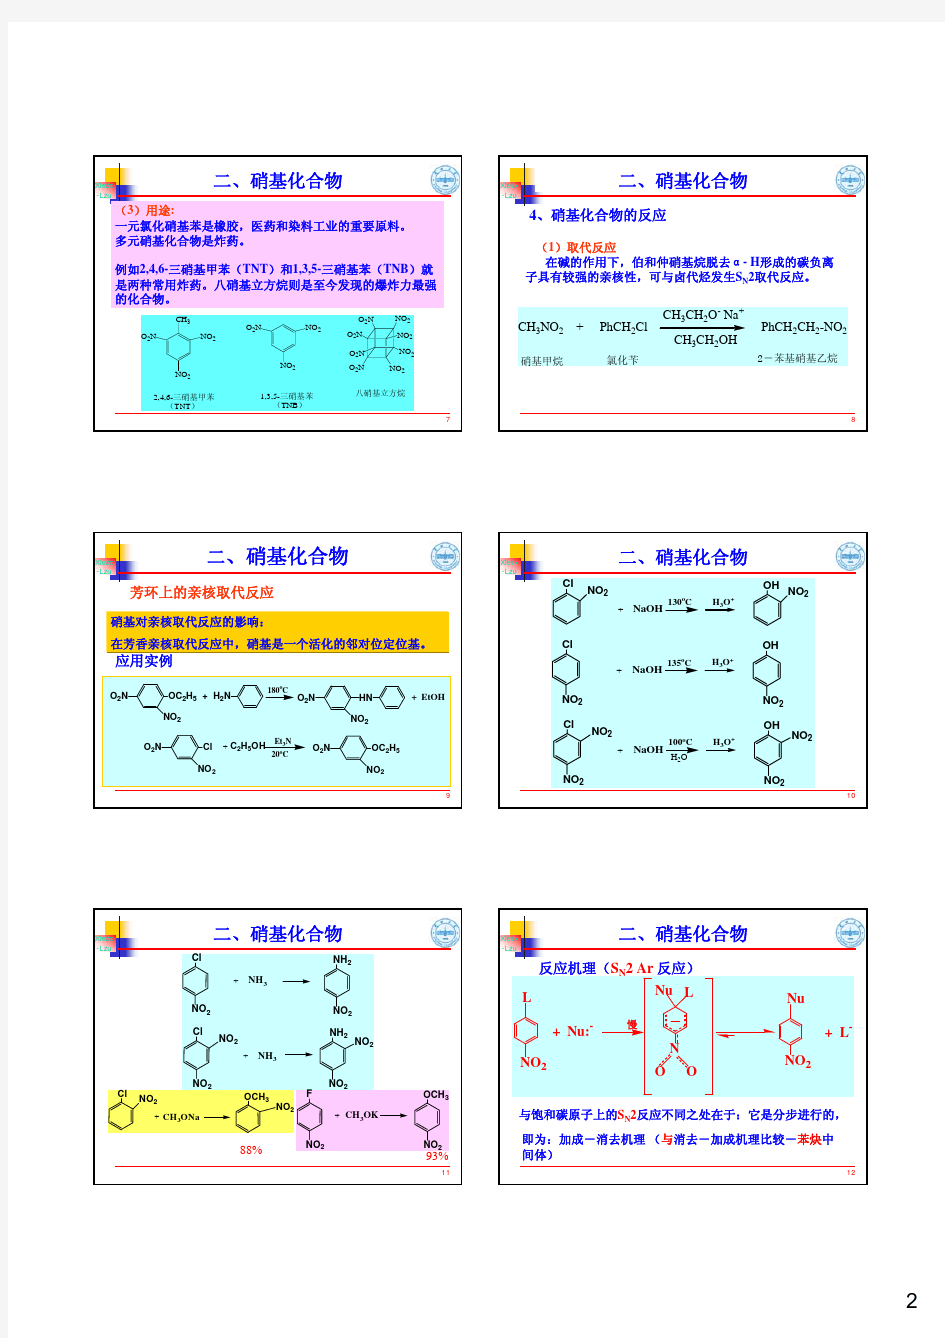 16  基础有机化学(邢其毅、第三版)其它含氮化合物